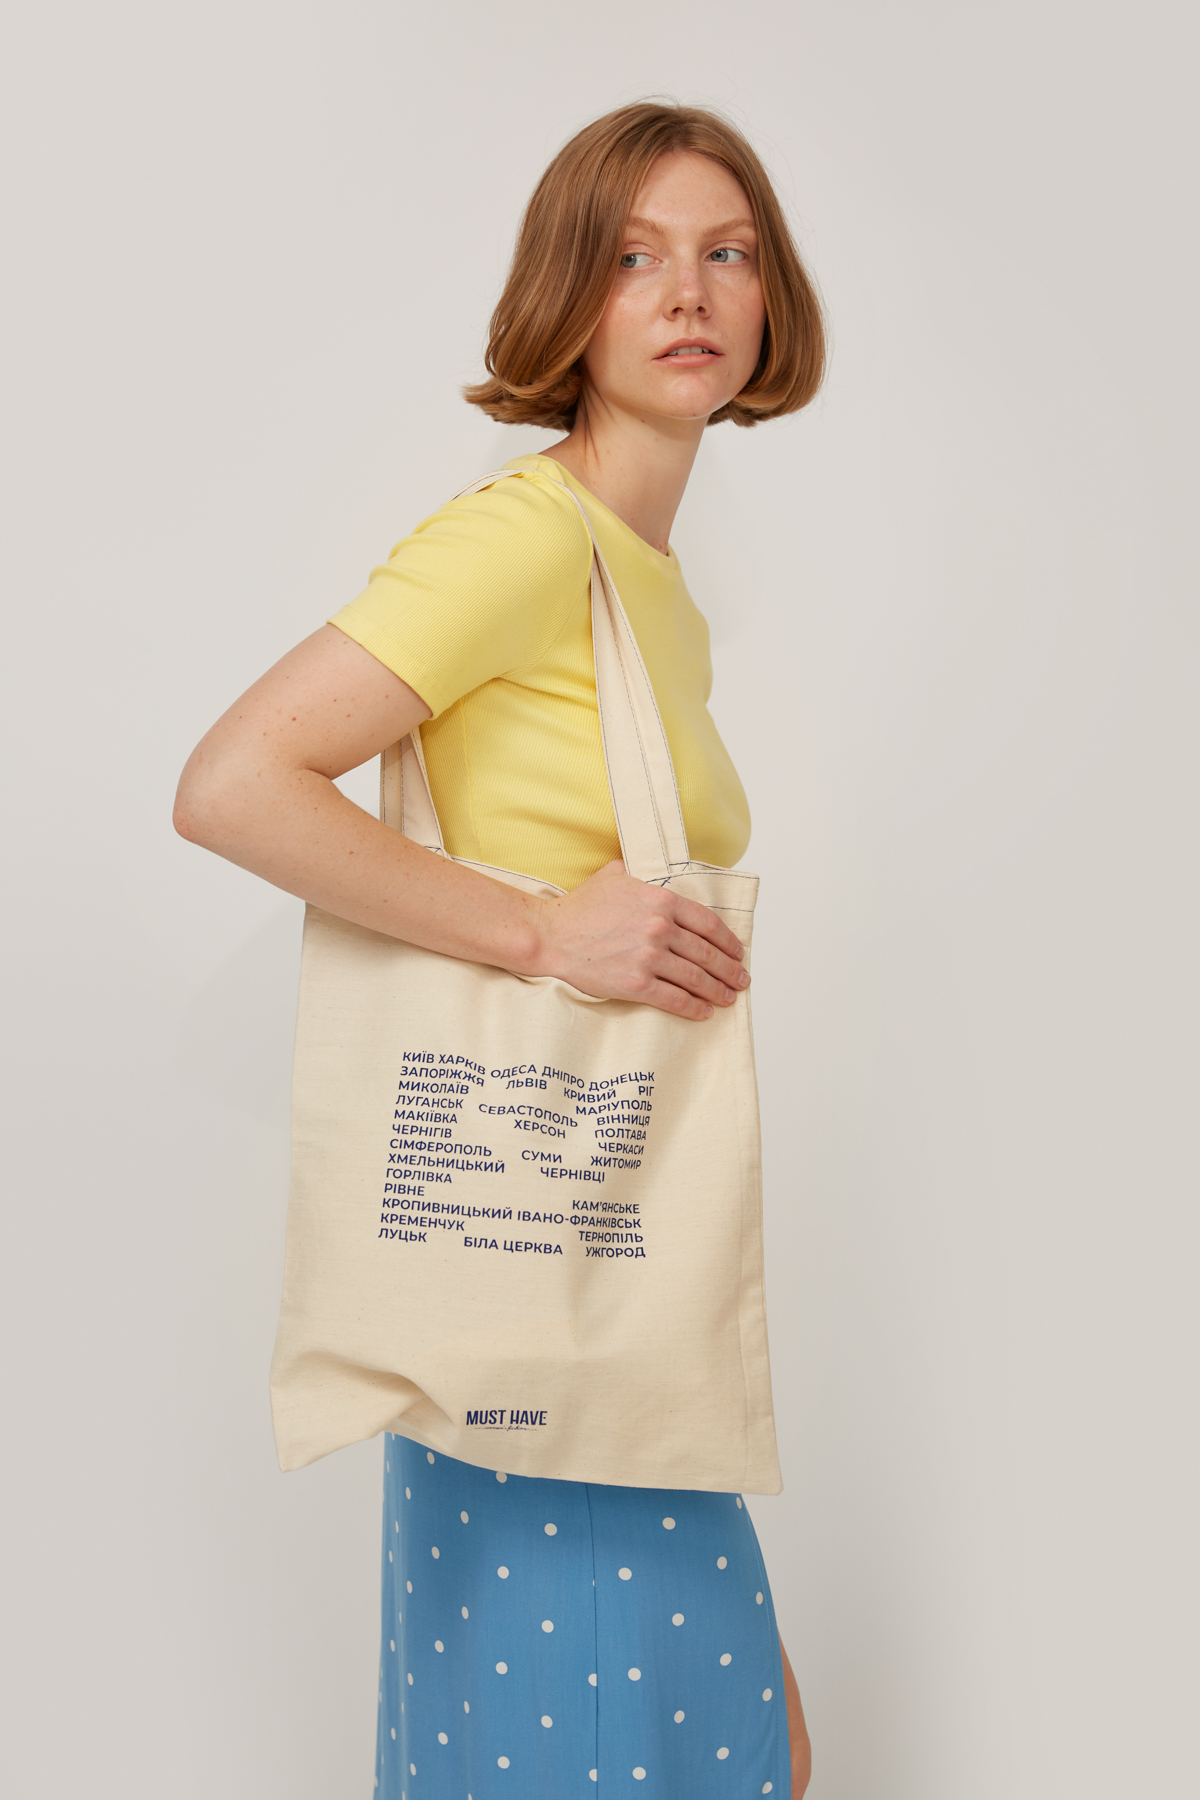 Бежевая сумка-шоппер из хлопка с надписью "Міста", фото 1